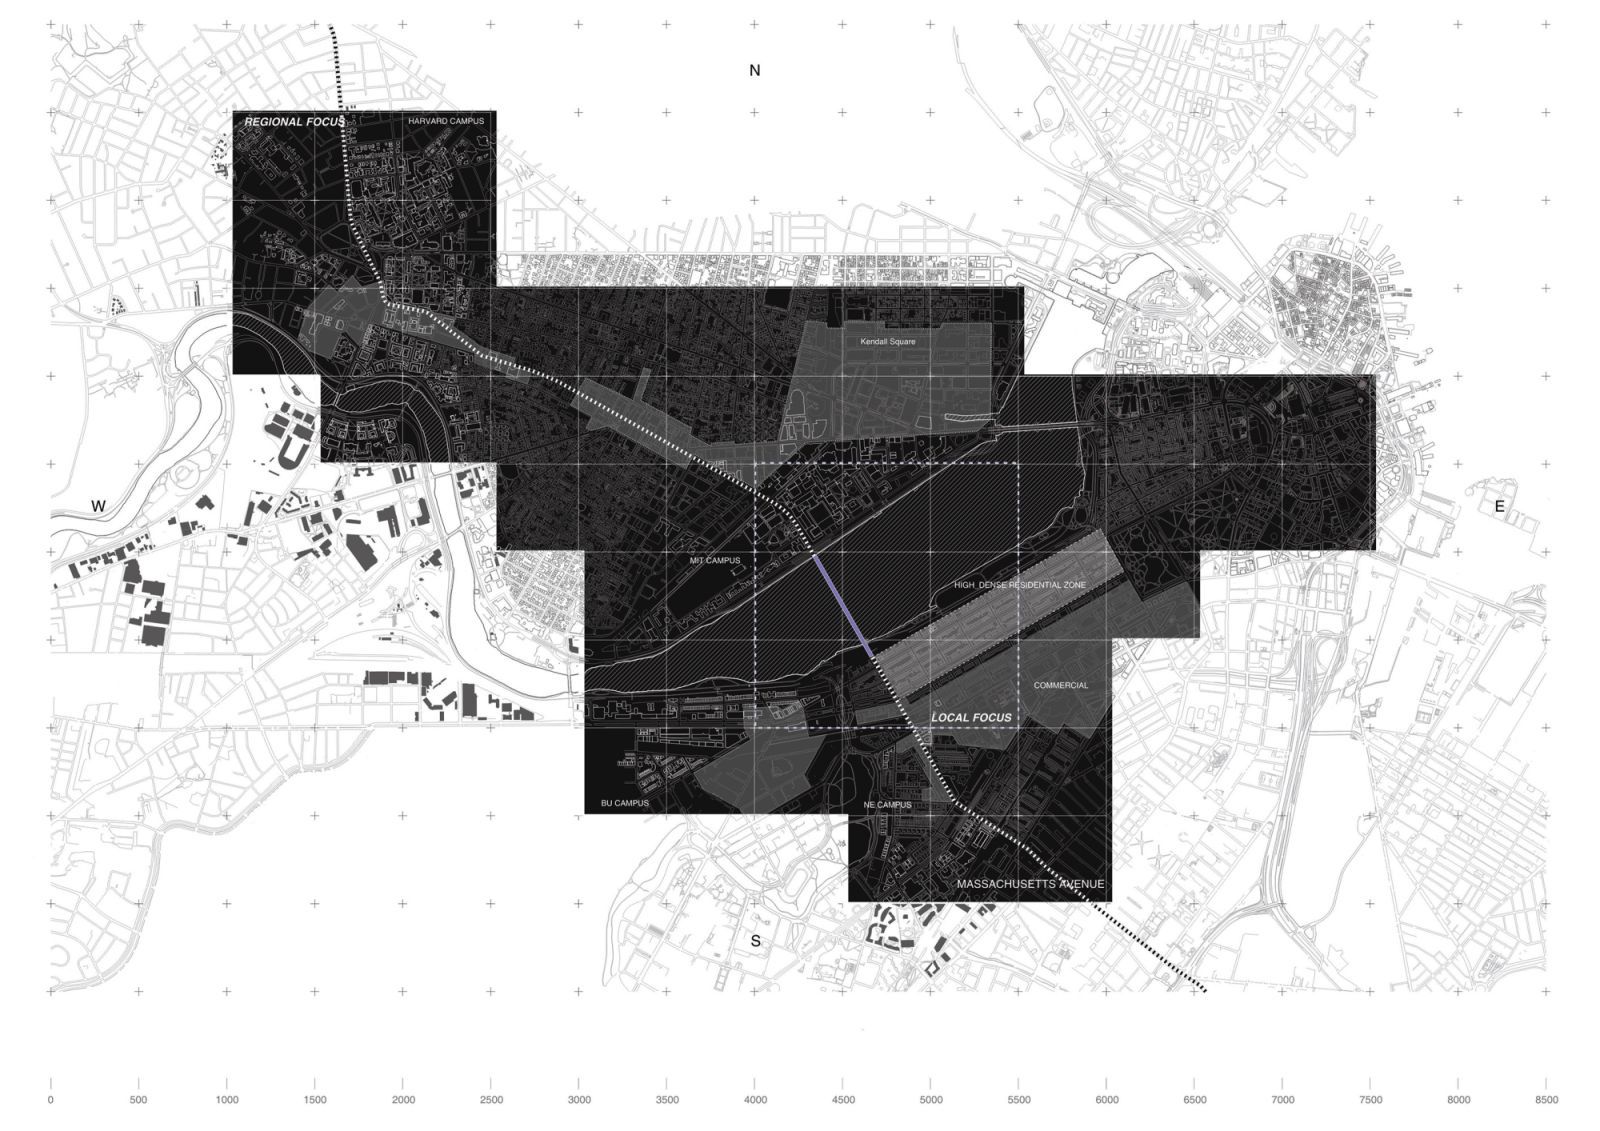 گالری عکس 12 طرح پیشنهادی MIT i2 از Suk Lee  عکس طراحی شهری عکس فضا در معماری عکس مجموعه فرهنگی عکس معماری آمریکا عکس معماری شهری